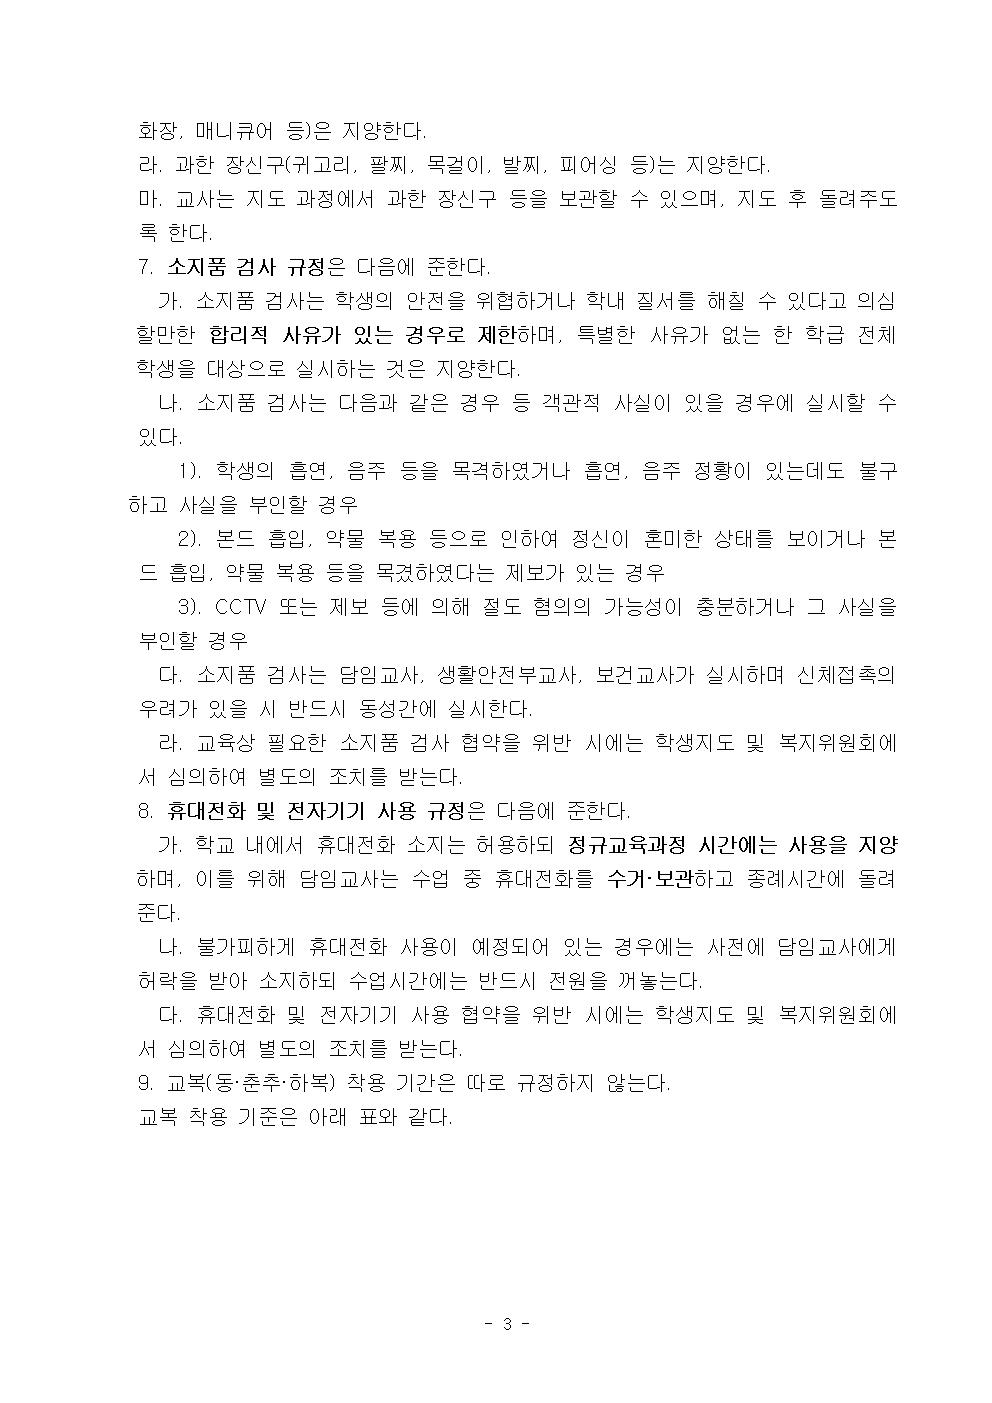 2022학년도 광혜원중학교 학생생활규정004